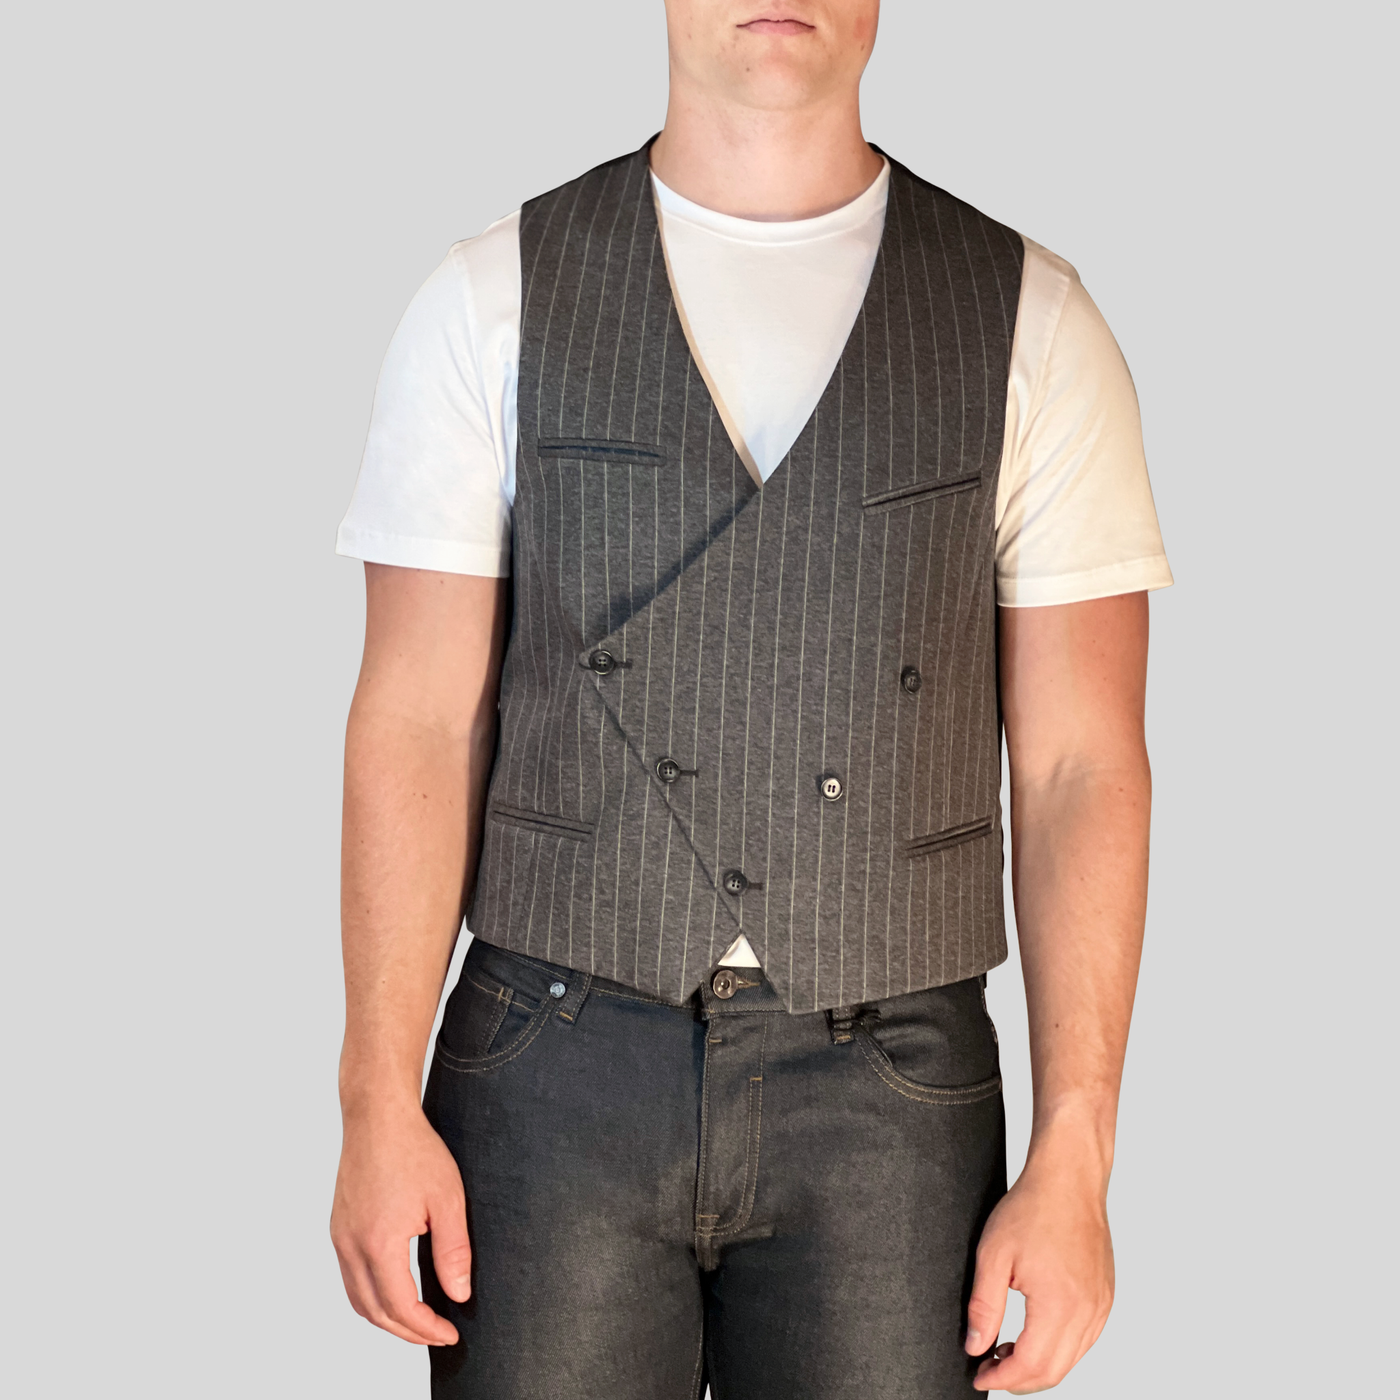 Gotstyle Fashion - Christopher Bates Vests Pinstripe Stretch Jersey Vest - Grey